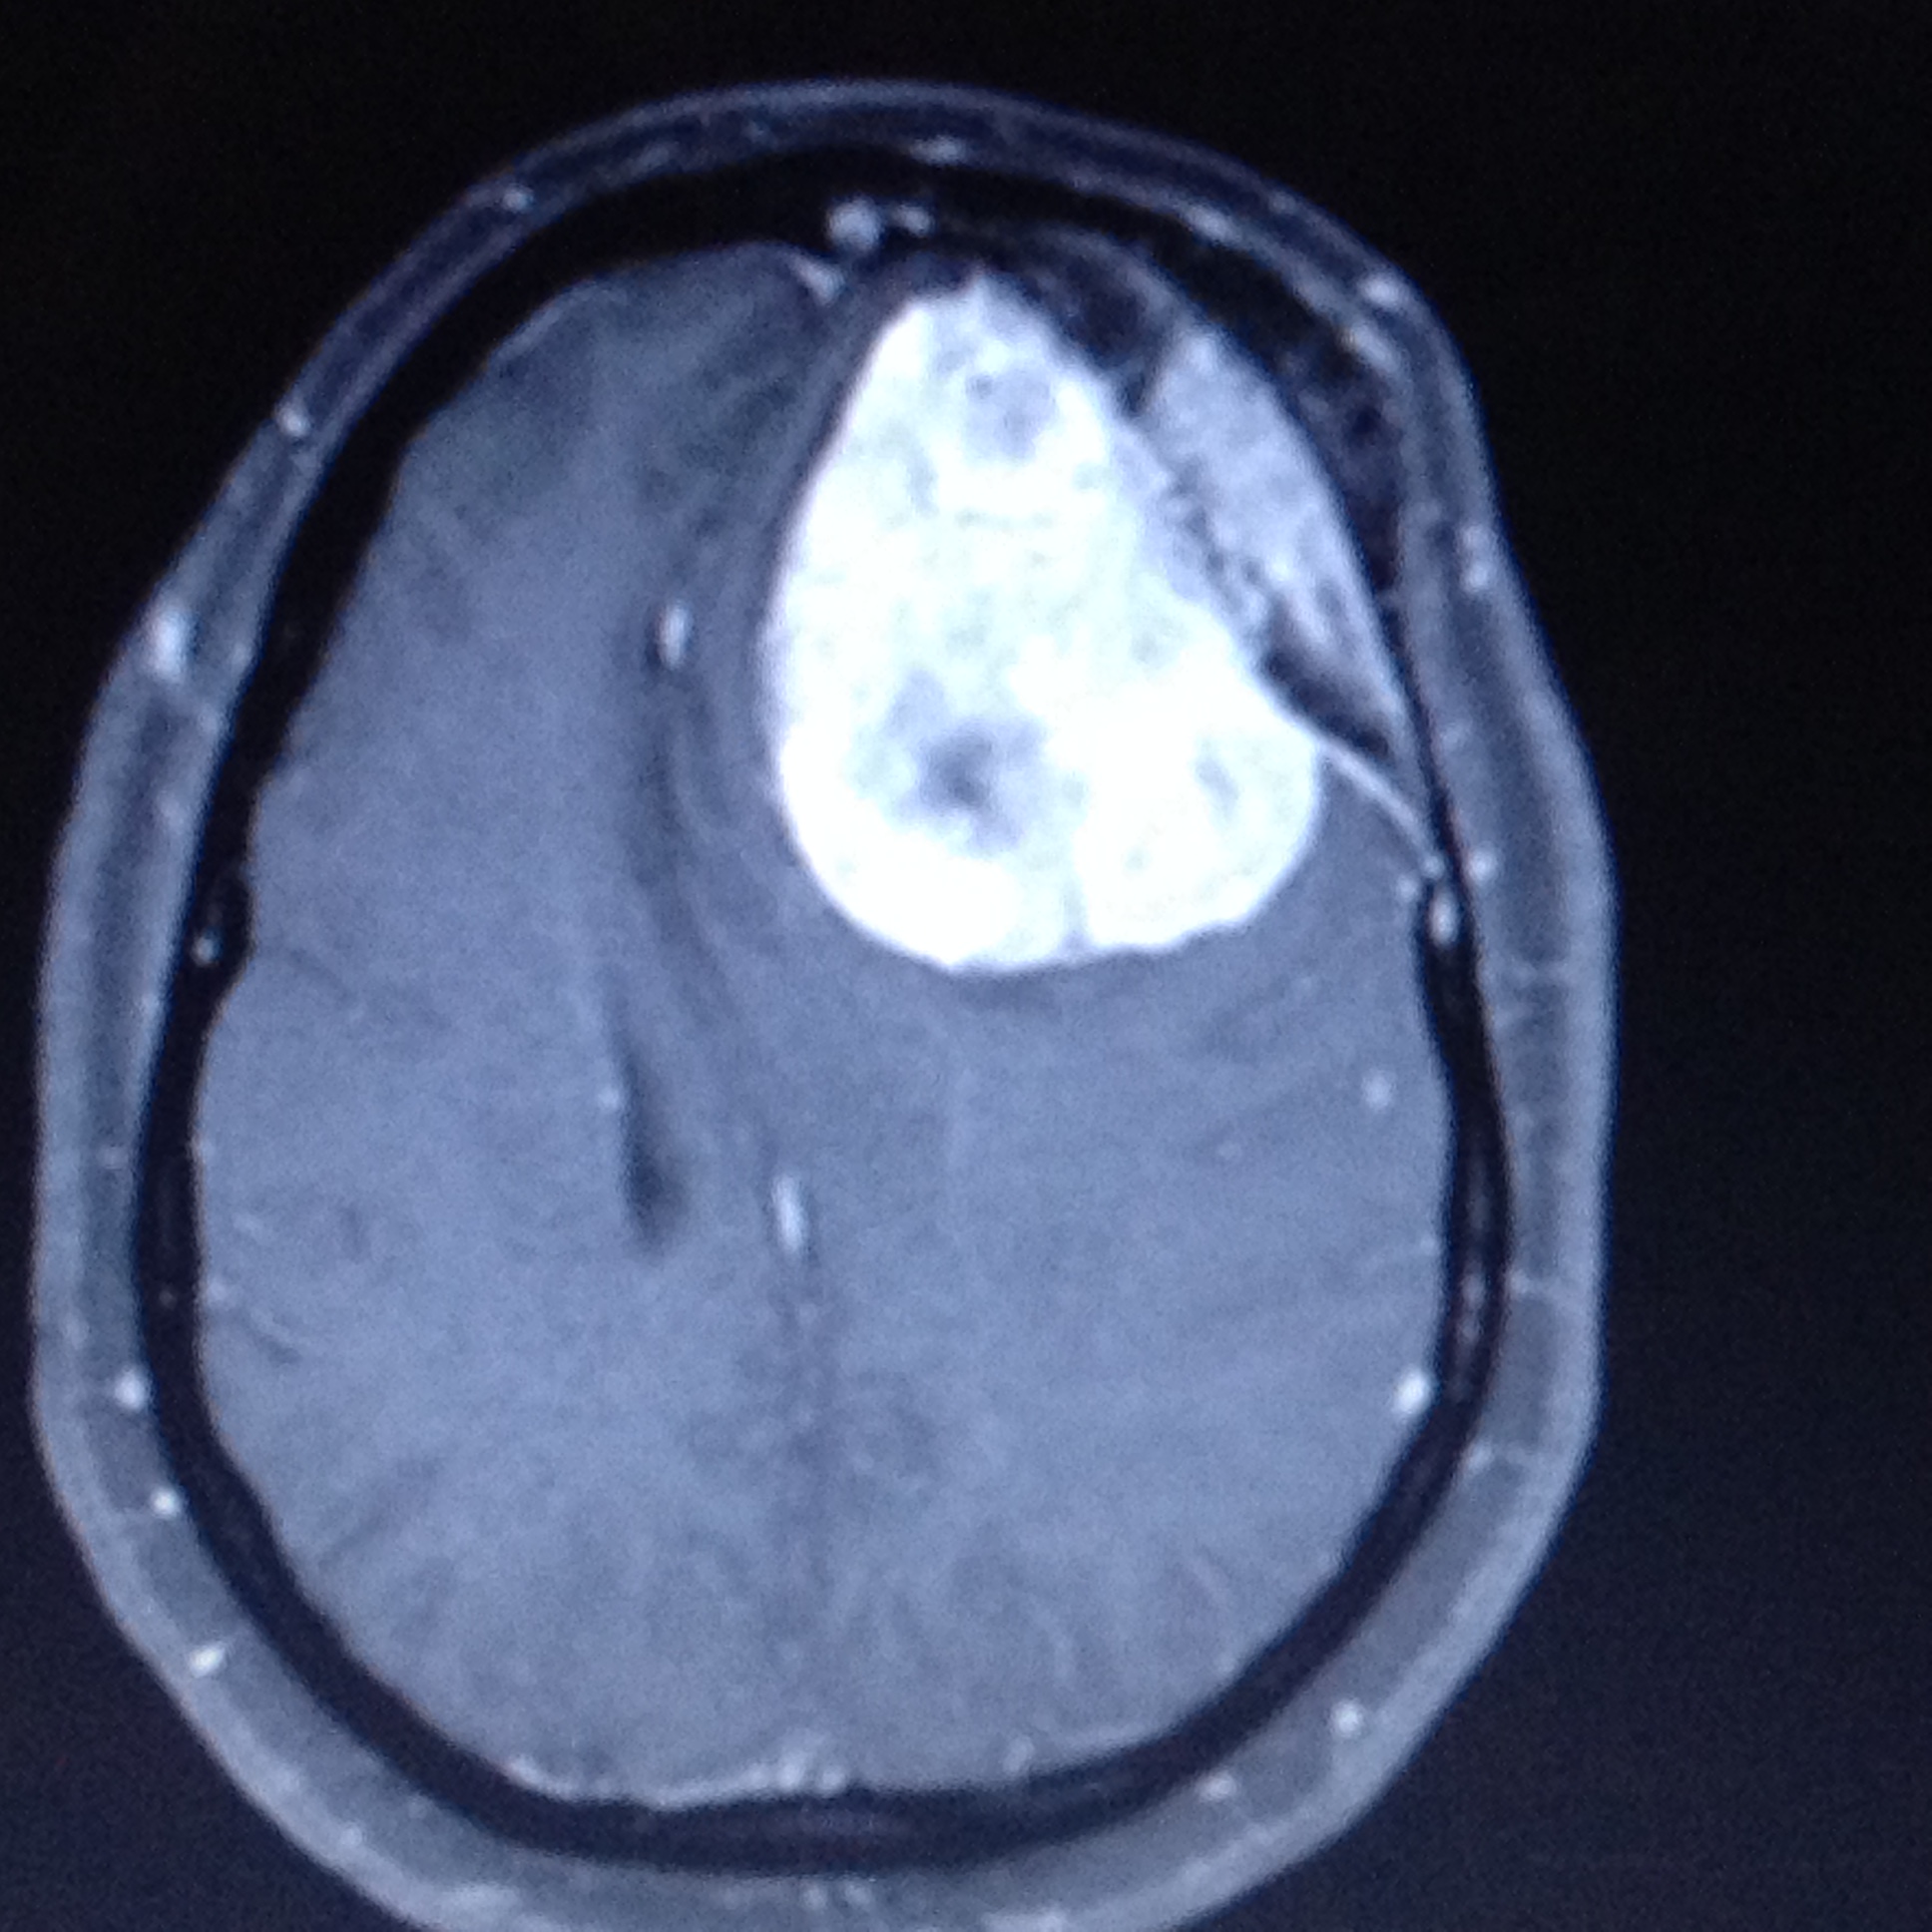 Frontal meningioma with hyperostosis